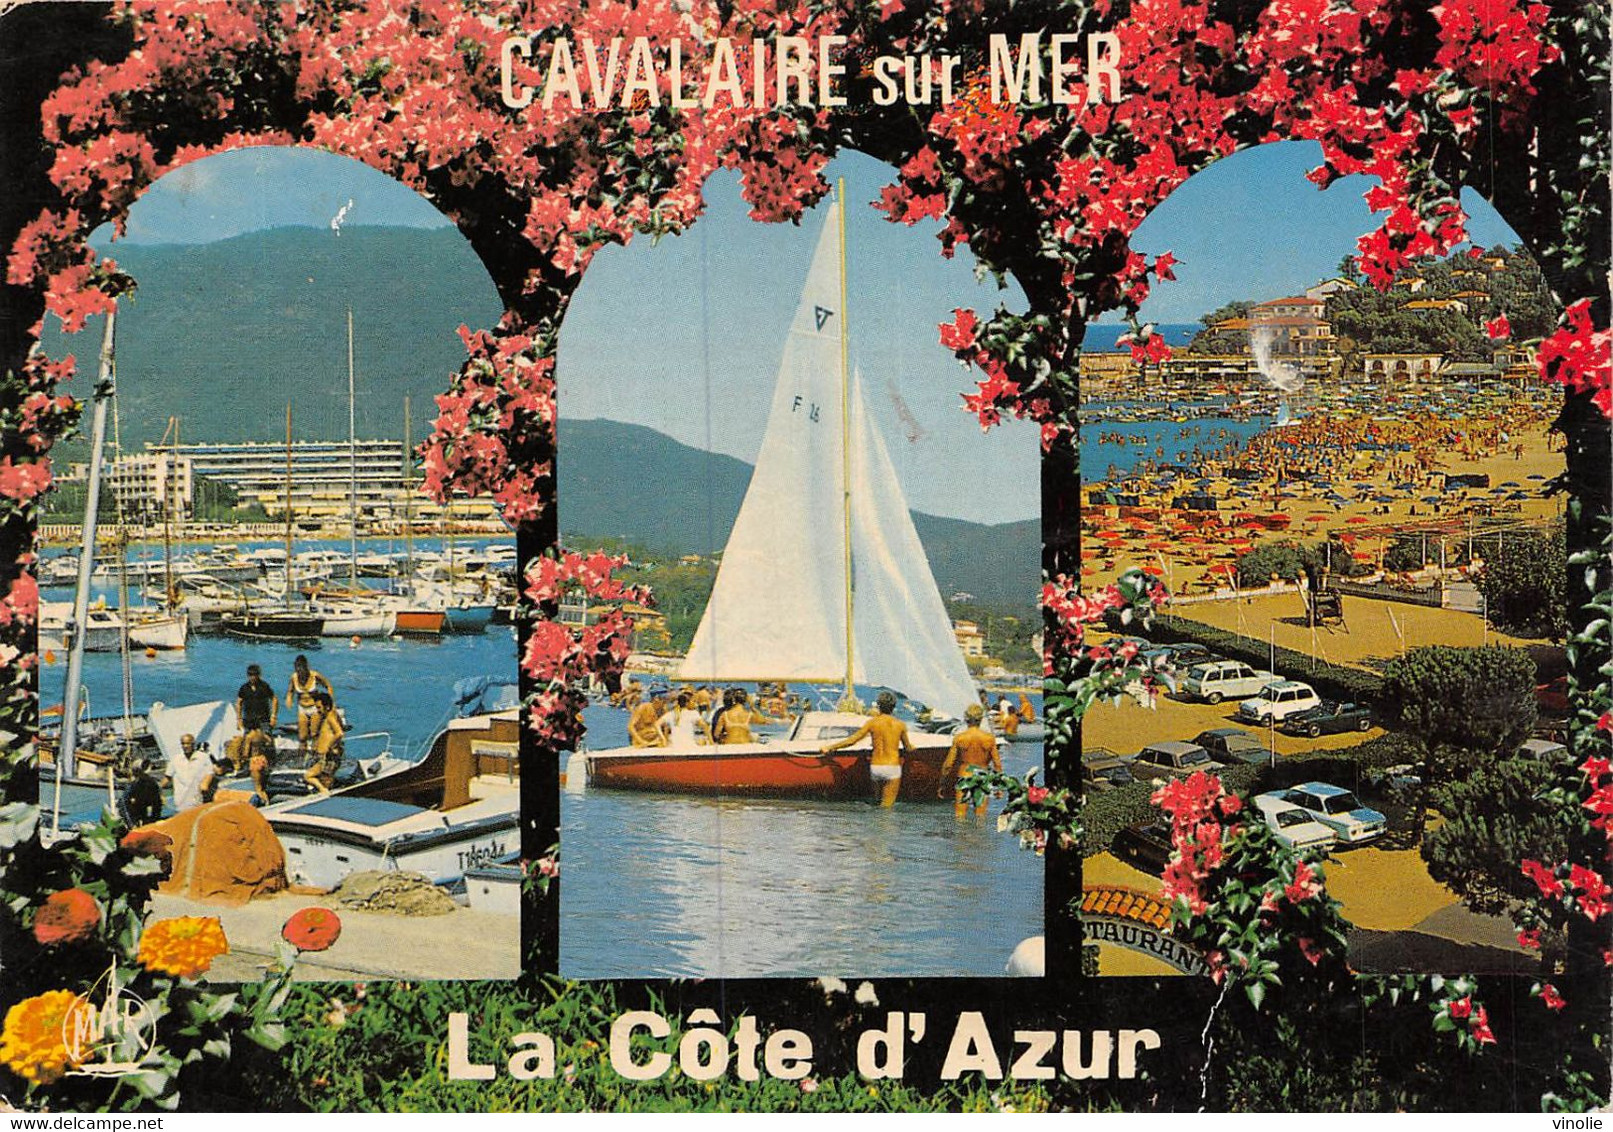 PIE-E-22-9534 : CAVALAIRE-SUR-MER - Cavalaire-sur-Mer